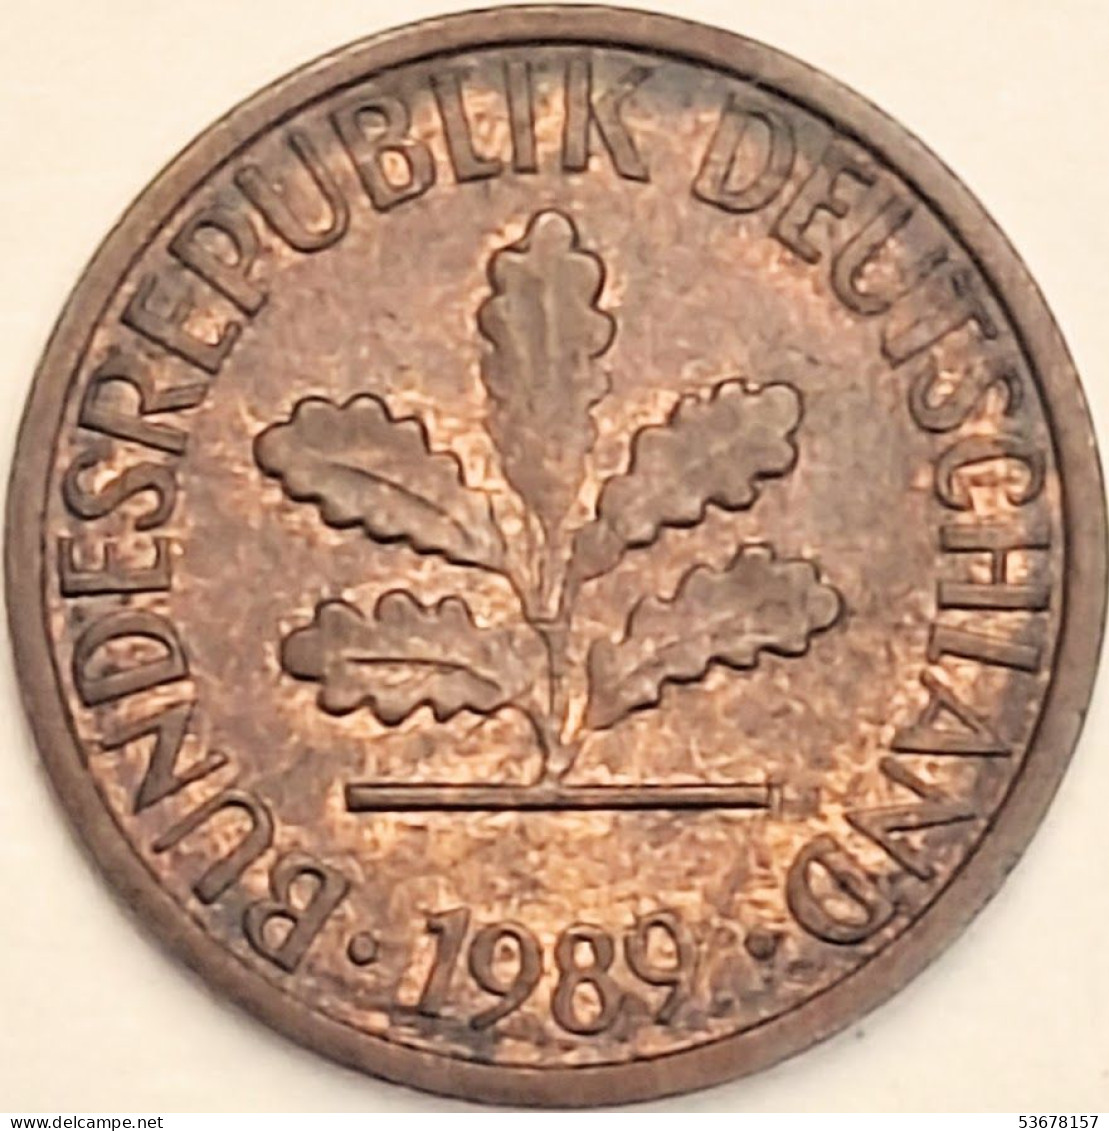 Germany Federal Republic - Pfennig 1989 J, KM# 105 (#4504) - 1 Pfennig